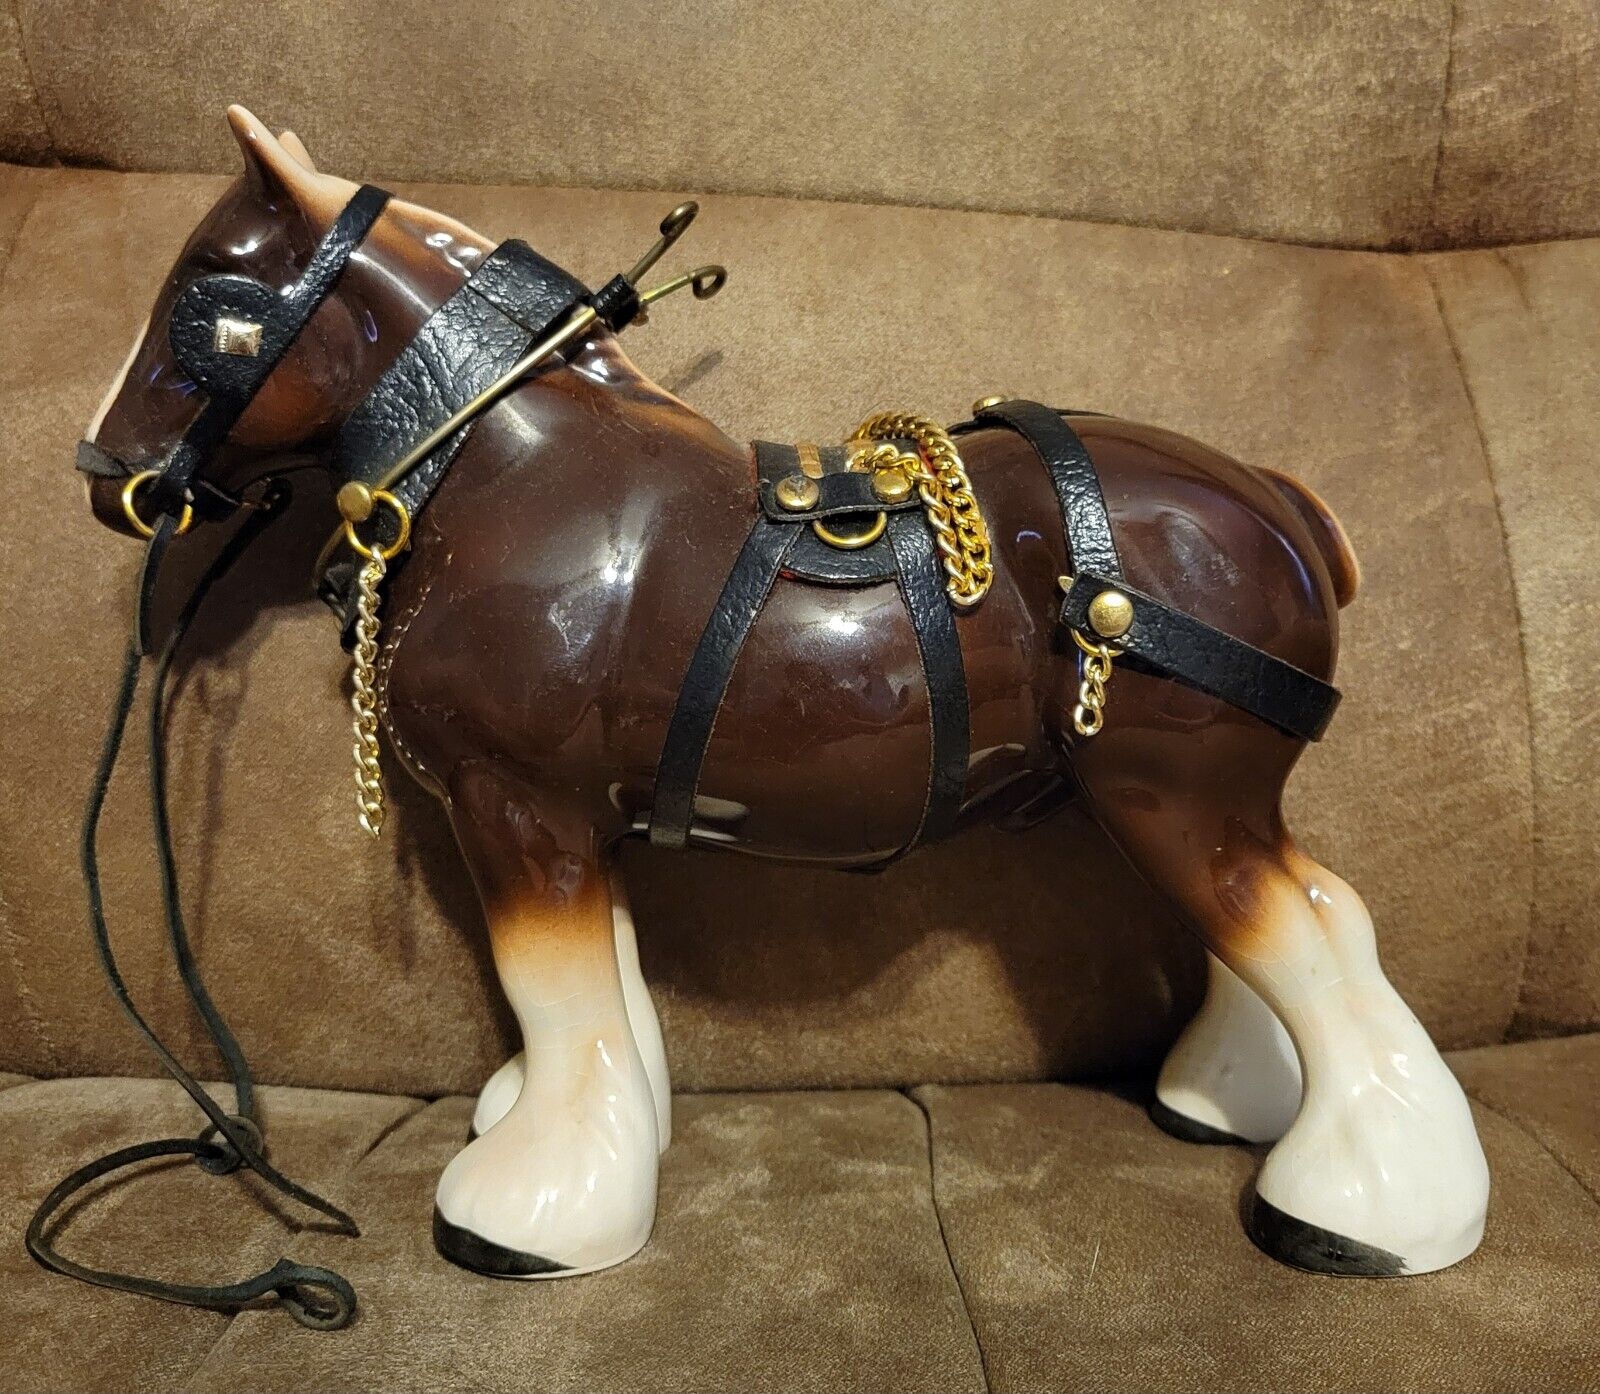 Vintage Clydesdale Ceramic Horse Model 